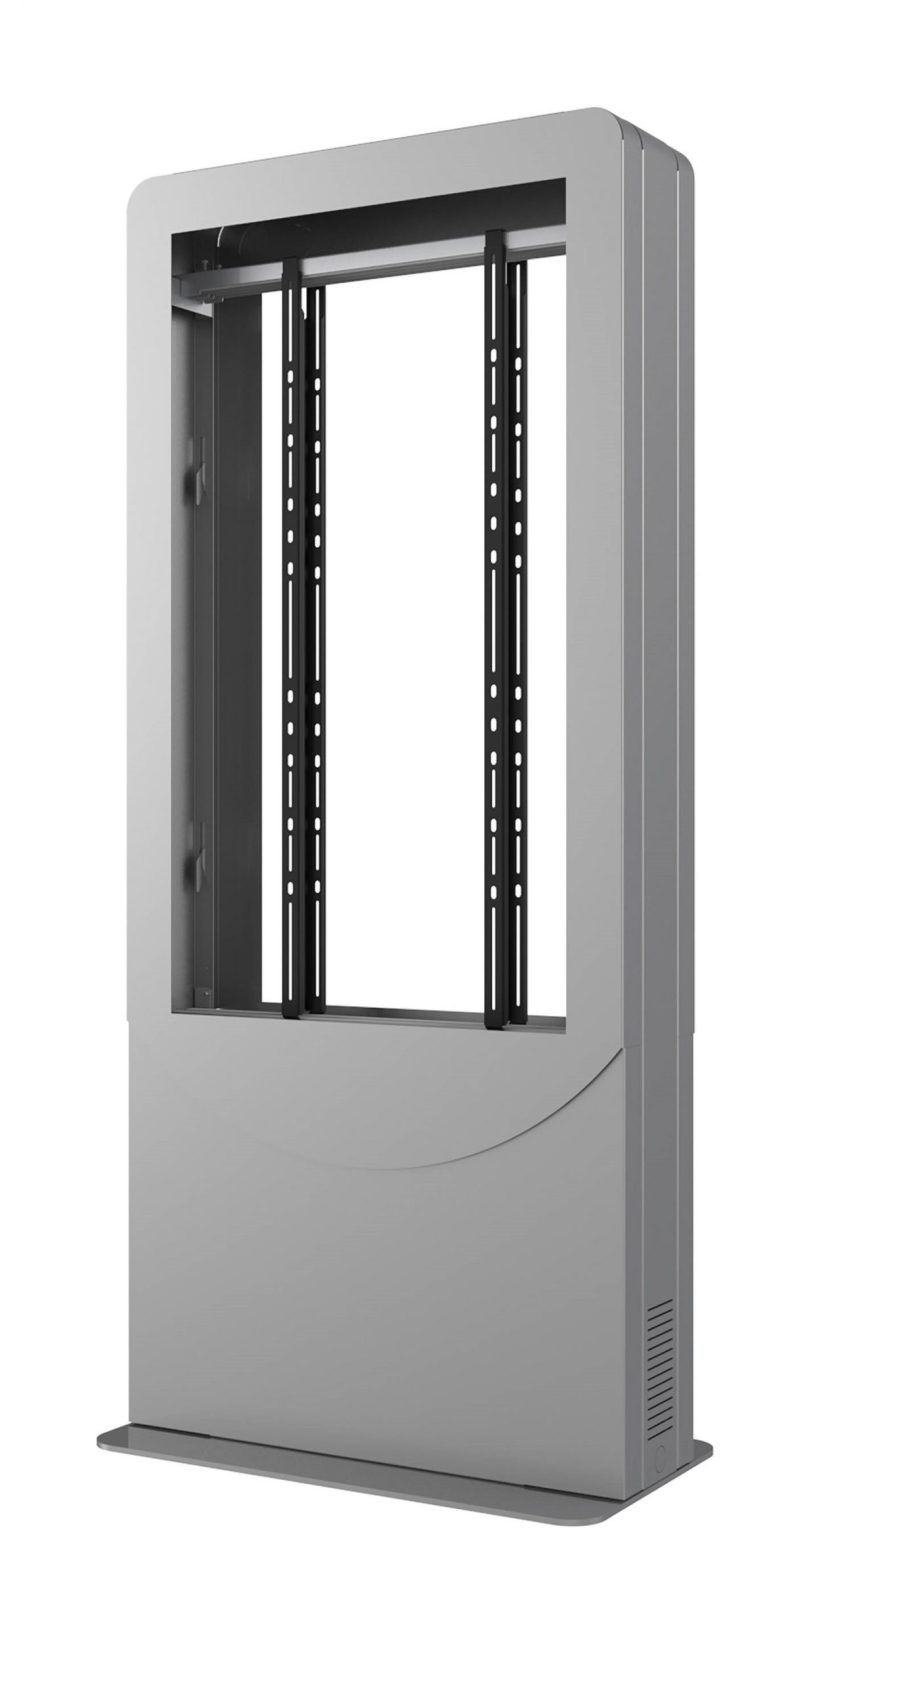 Peerless-AV KIPC2543B-S-3-EUK Floorstanding Portrait Back-to-Back Kiosk for 43″ Displays up to 3″ Deep, Silver, EUK